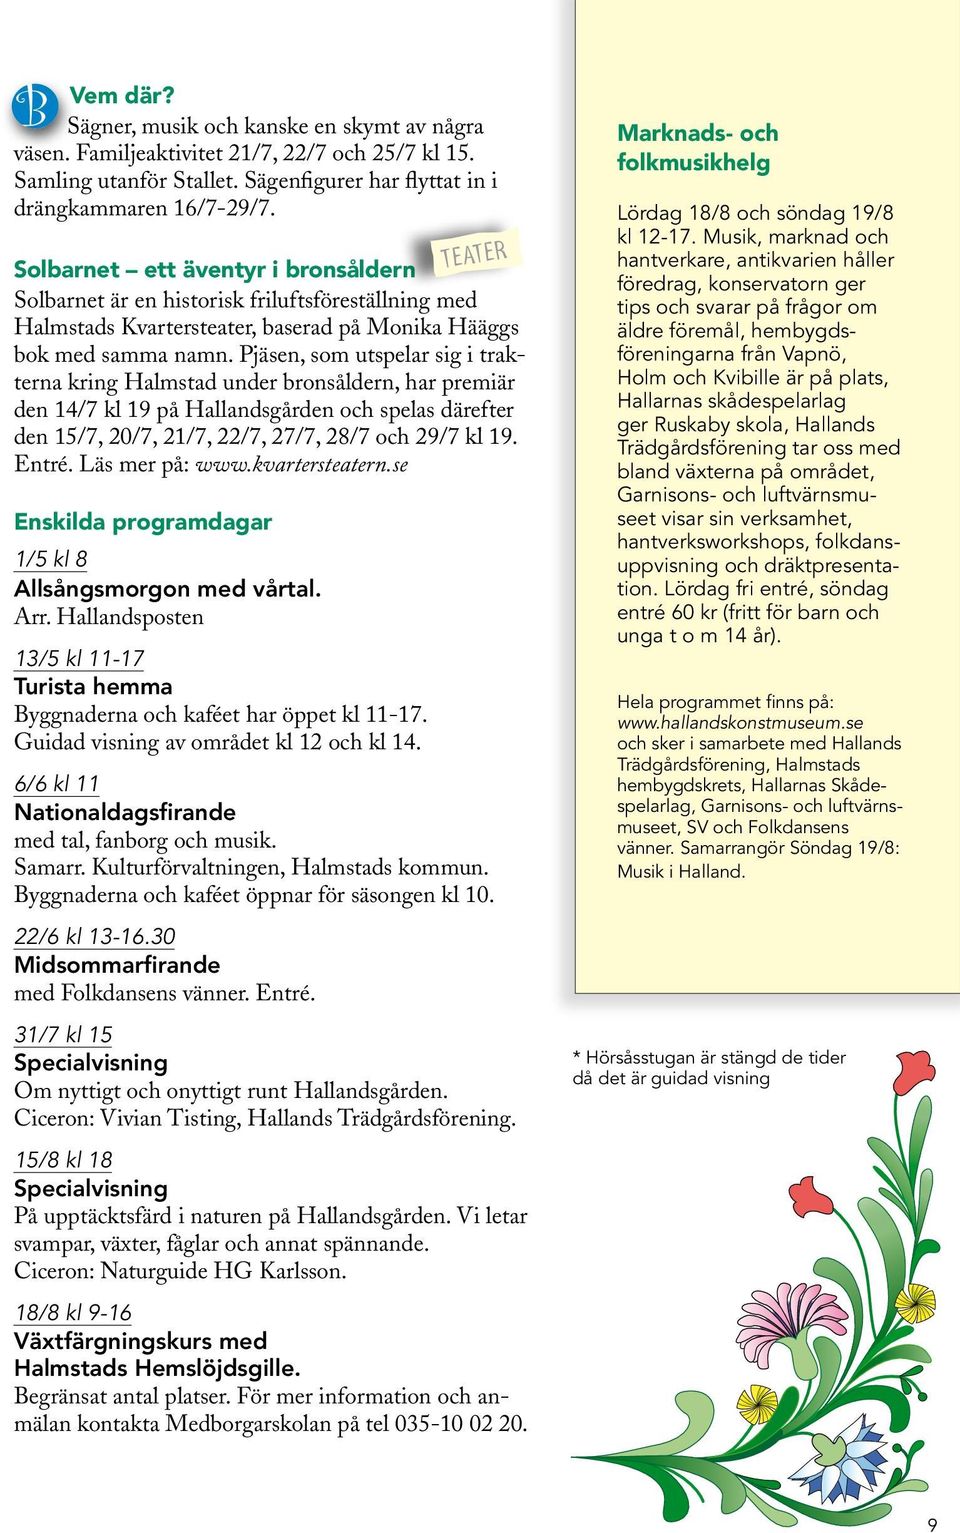 Pjäsen, som utspelar sig i trakterna kring Halmstad under bronsåldern, har premiär den 14/7 kl 19 på Hallandsgården och spelas därefter den 15/7, 20/7, 21/7, 22/7, 27/7, 28/7 och 29/7 kl 19. Entré.